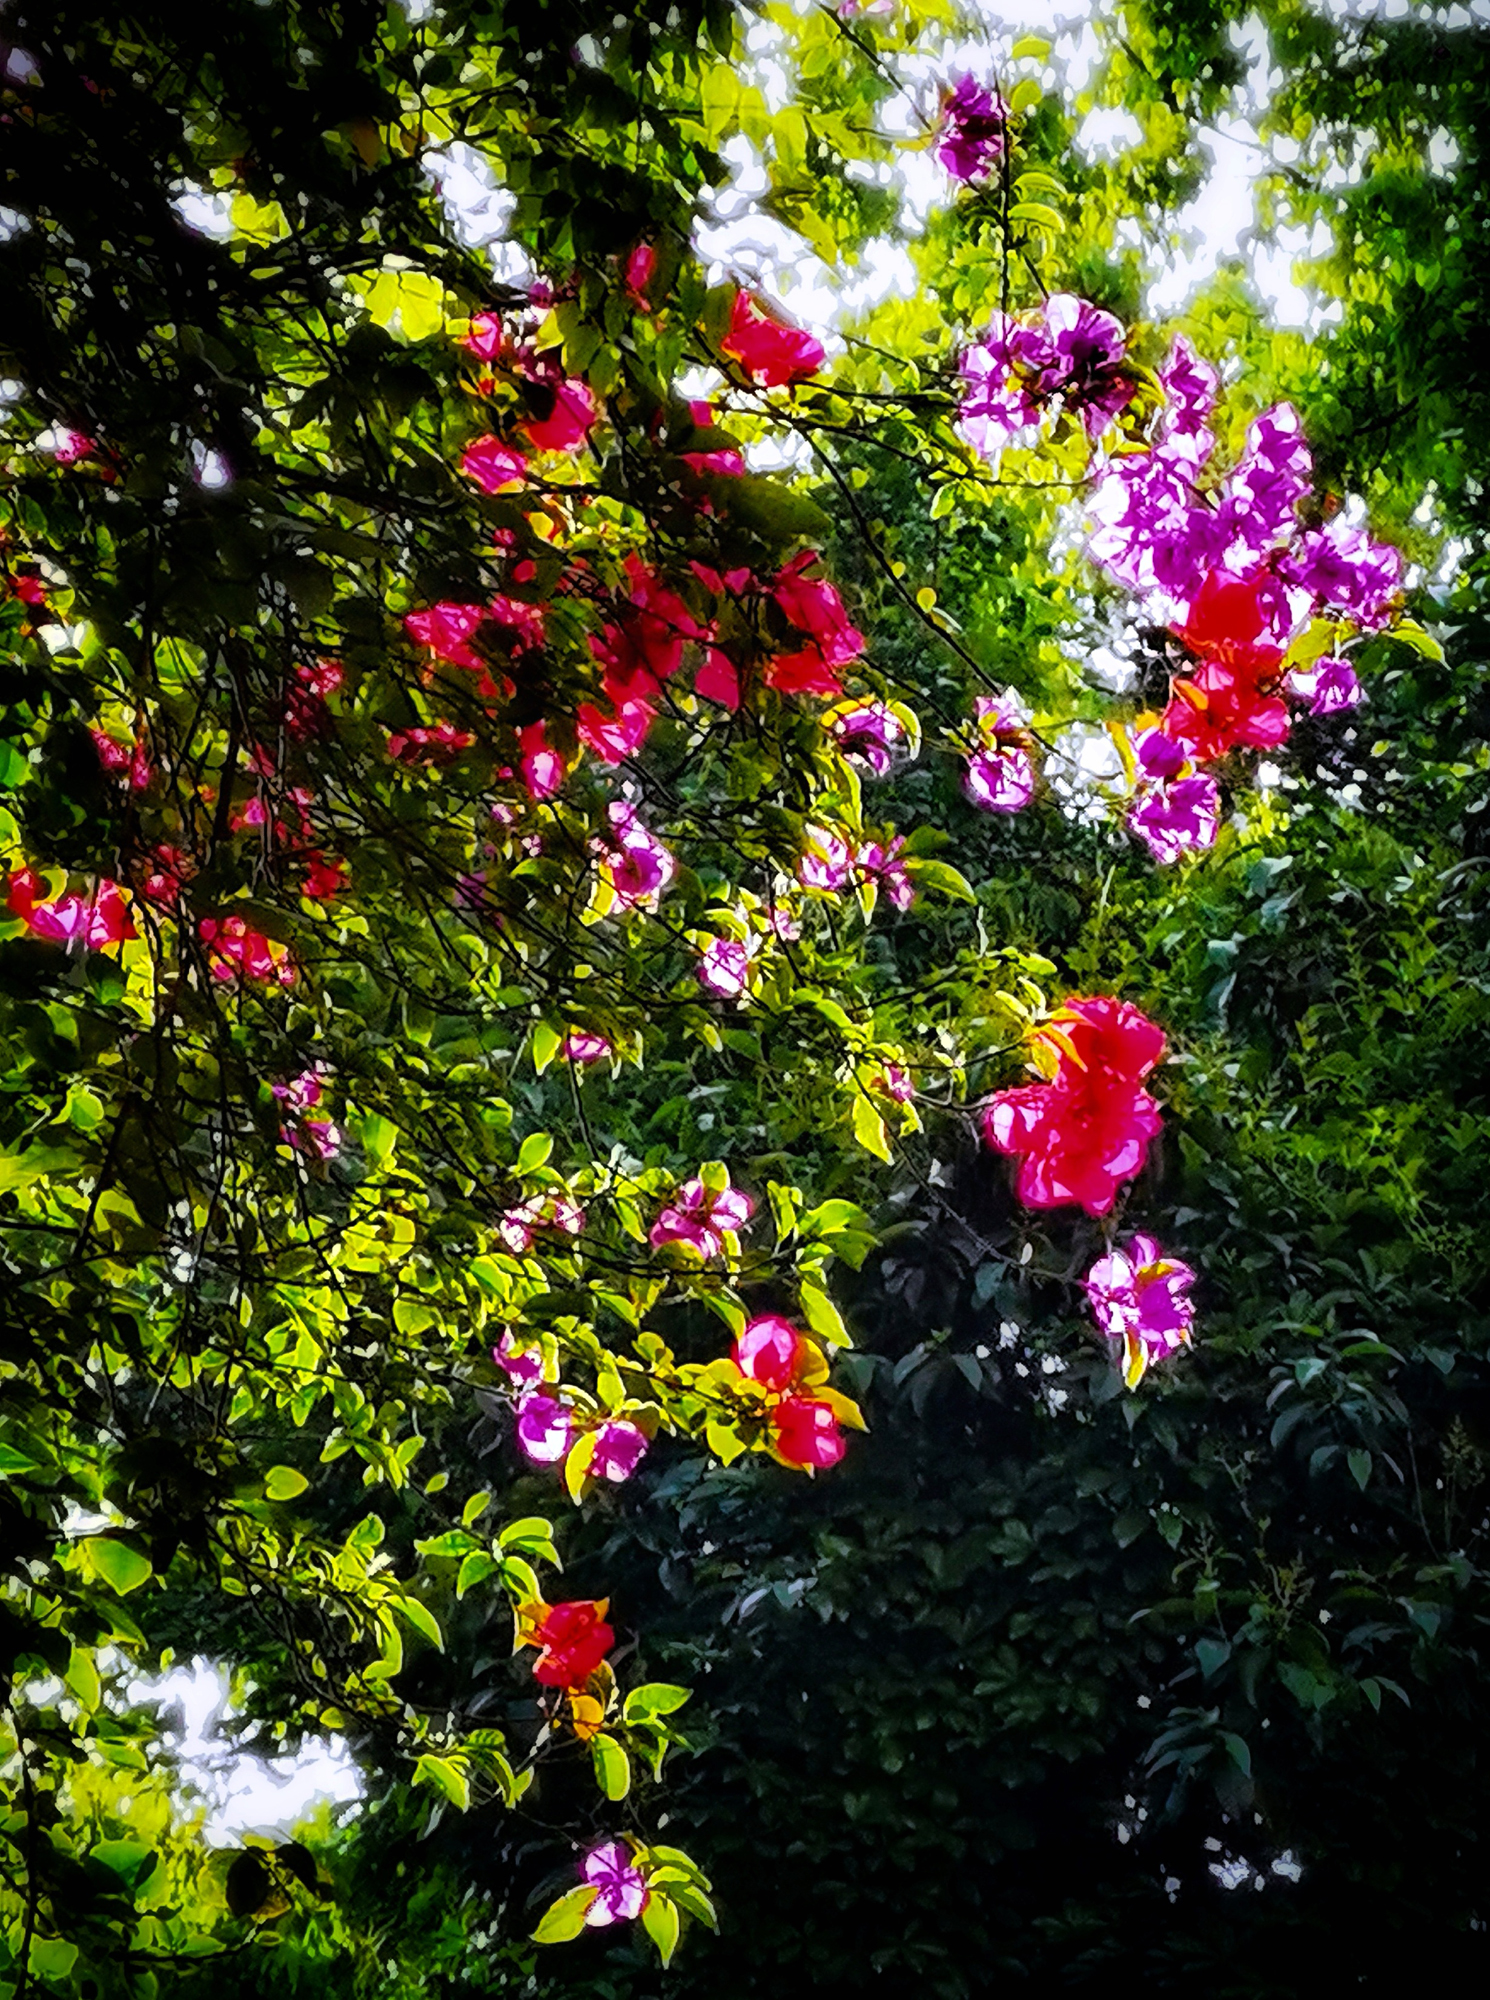 hk_c_立夏，園子里的花兒爭先開放，五月鮮花開遍了原野。康風雅雨.jpg